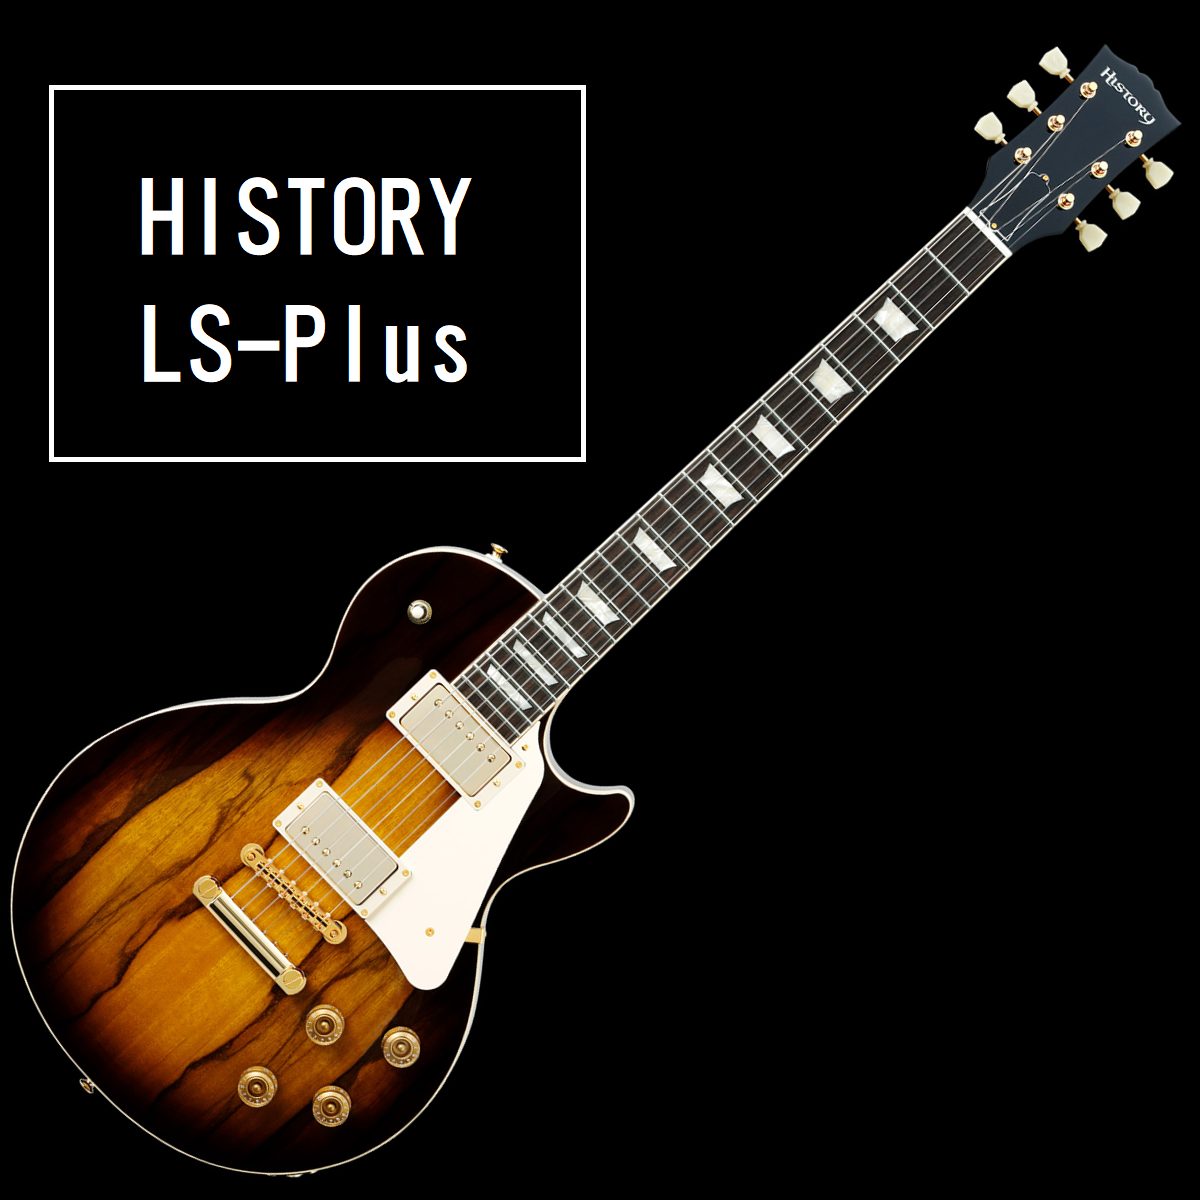 エレキギター History Ls Plus レスポール 入荷致しました 島村楽器 パークプレイス大分店